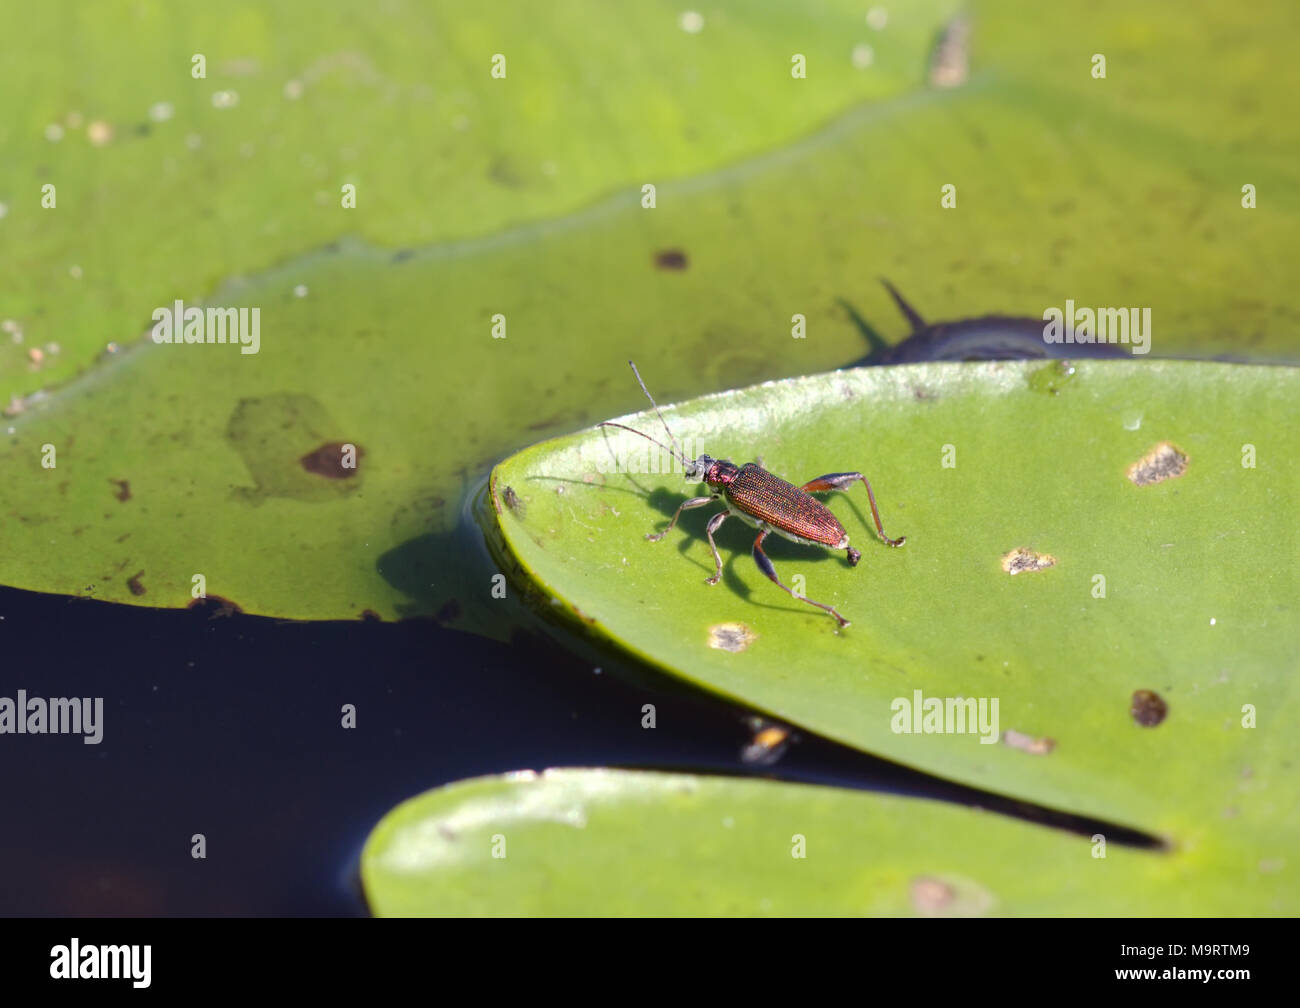 Leaf beetle (Donaciinae vulgaris) assis sur une feuille verte spatterdock, portrait, close-up Banque D'Images